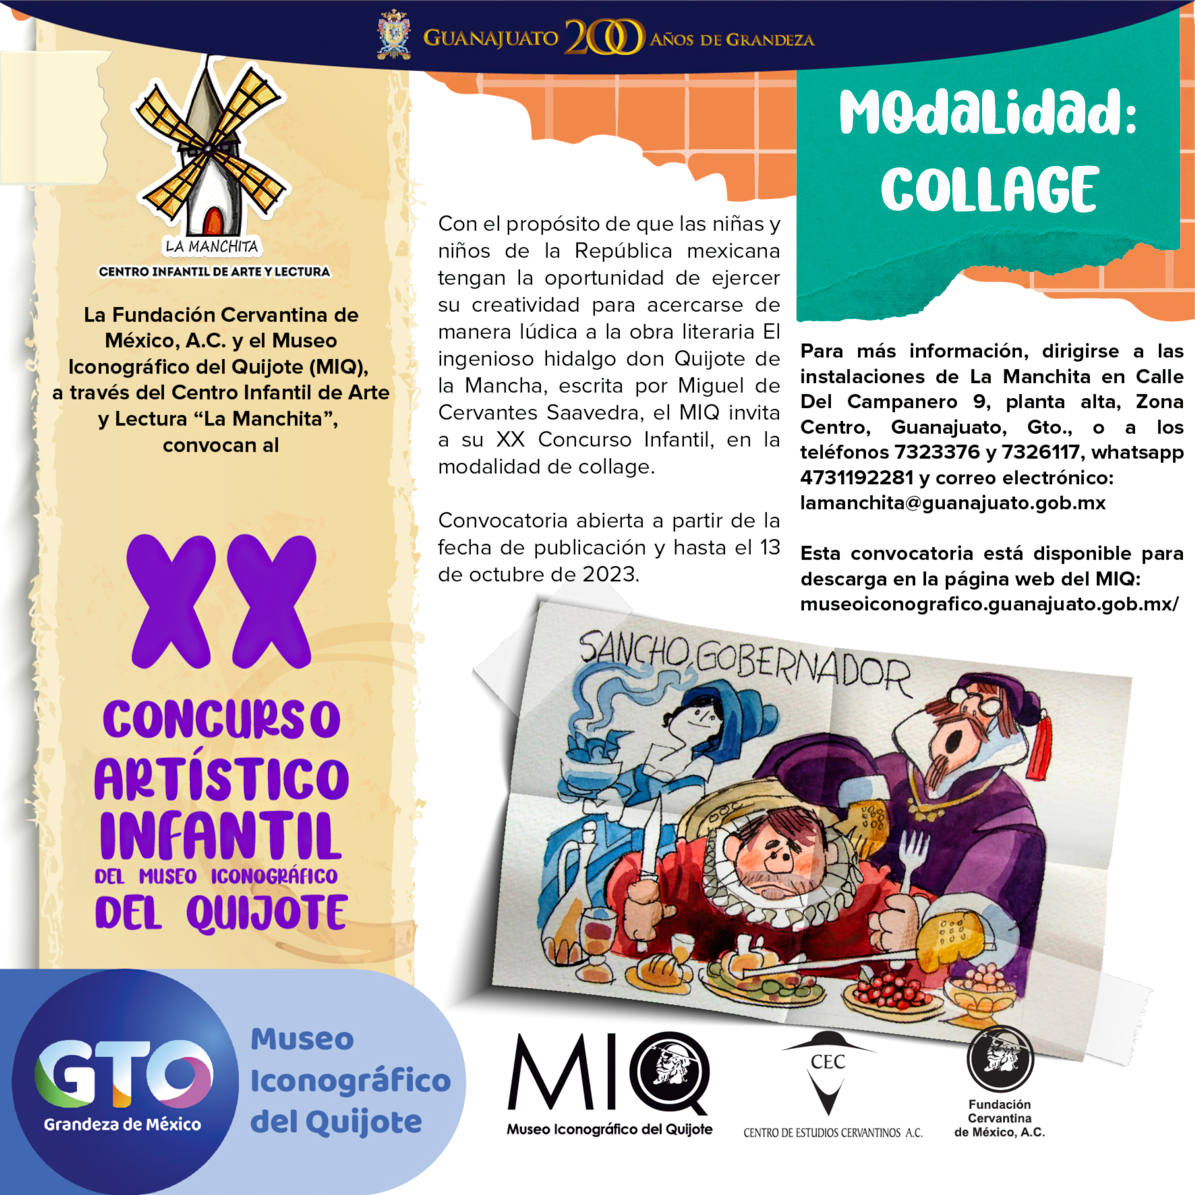 Concursos - Museo Iconográfico del Quijote